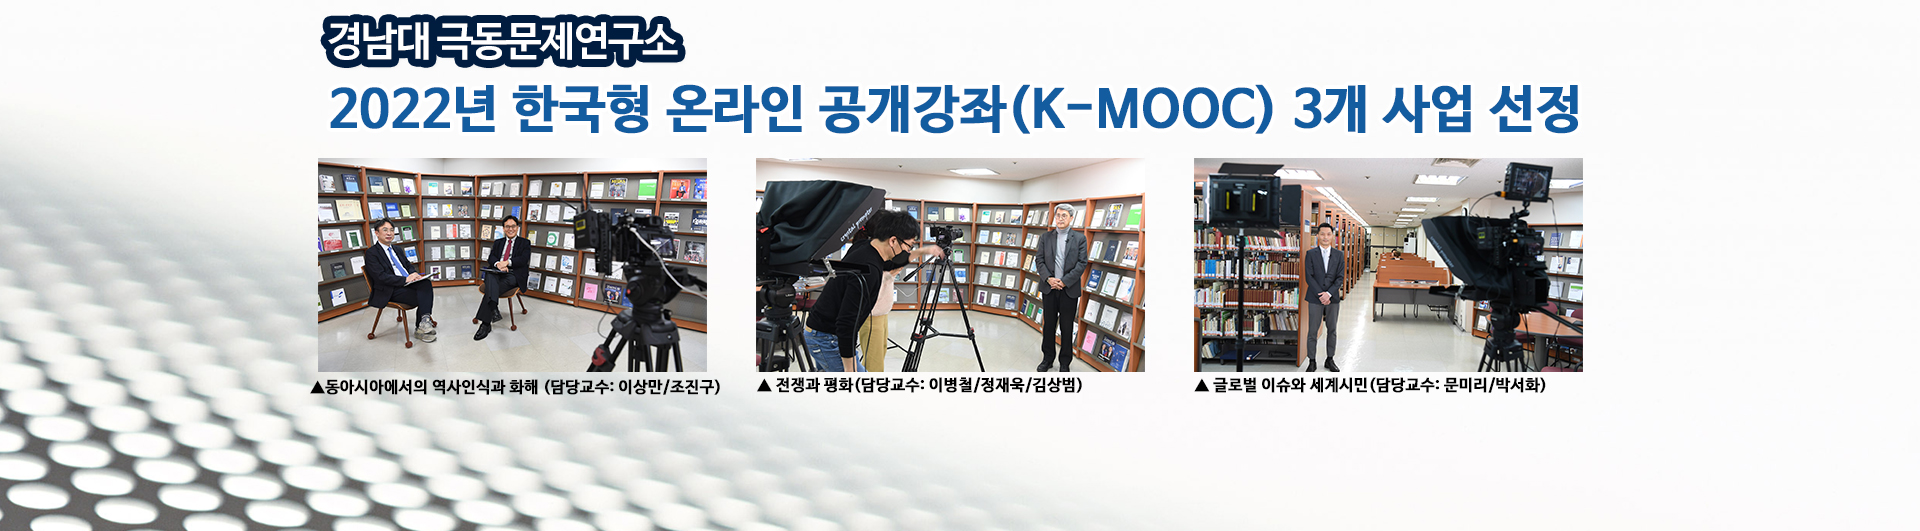 K-MOOC 3개 사업 선정